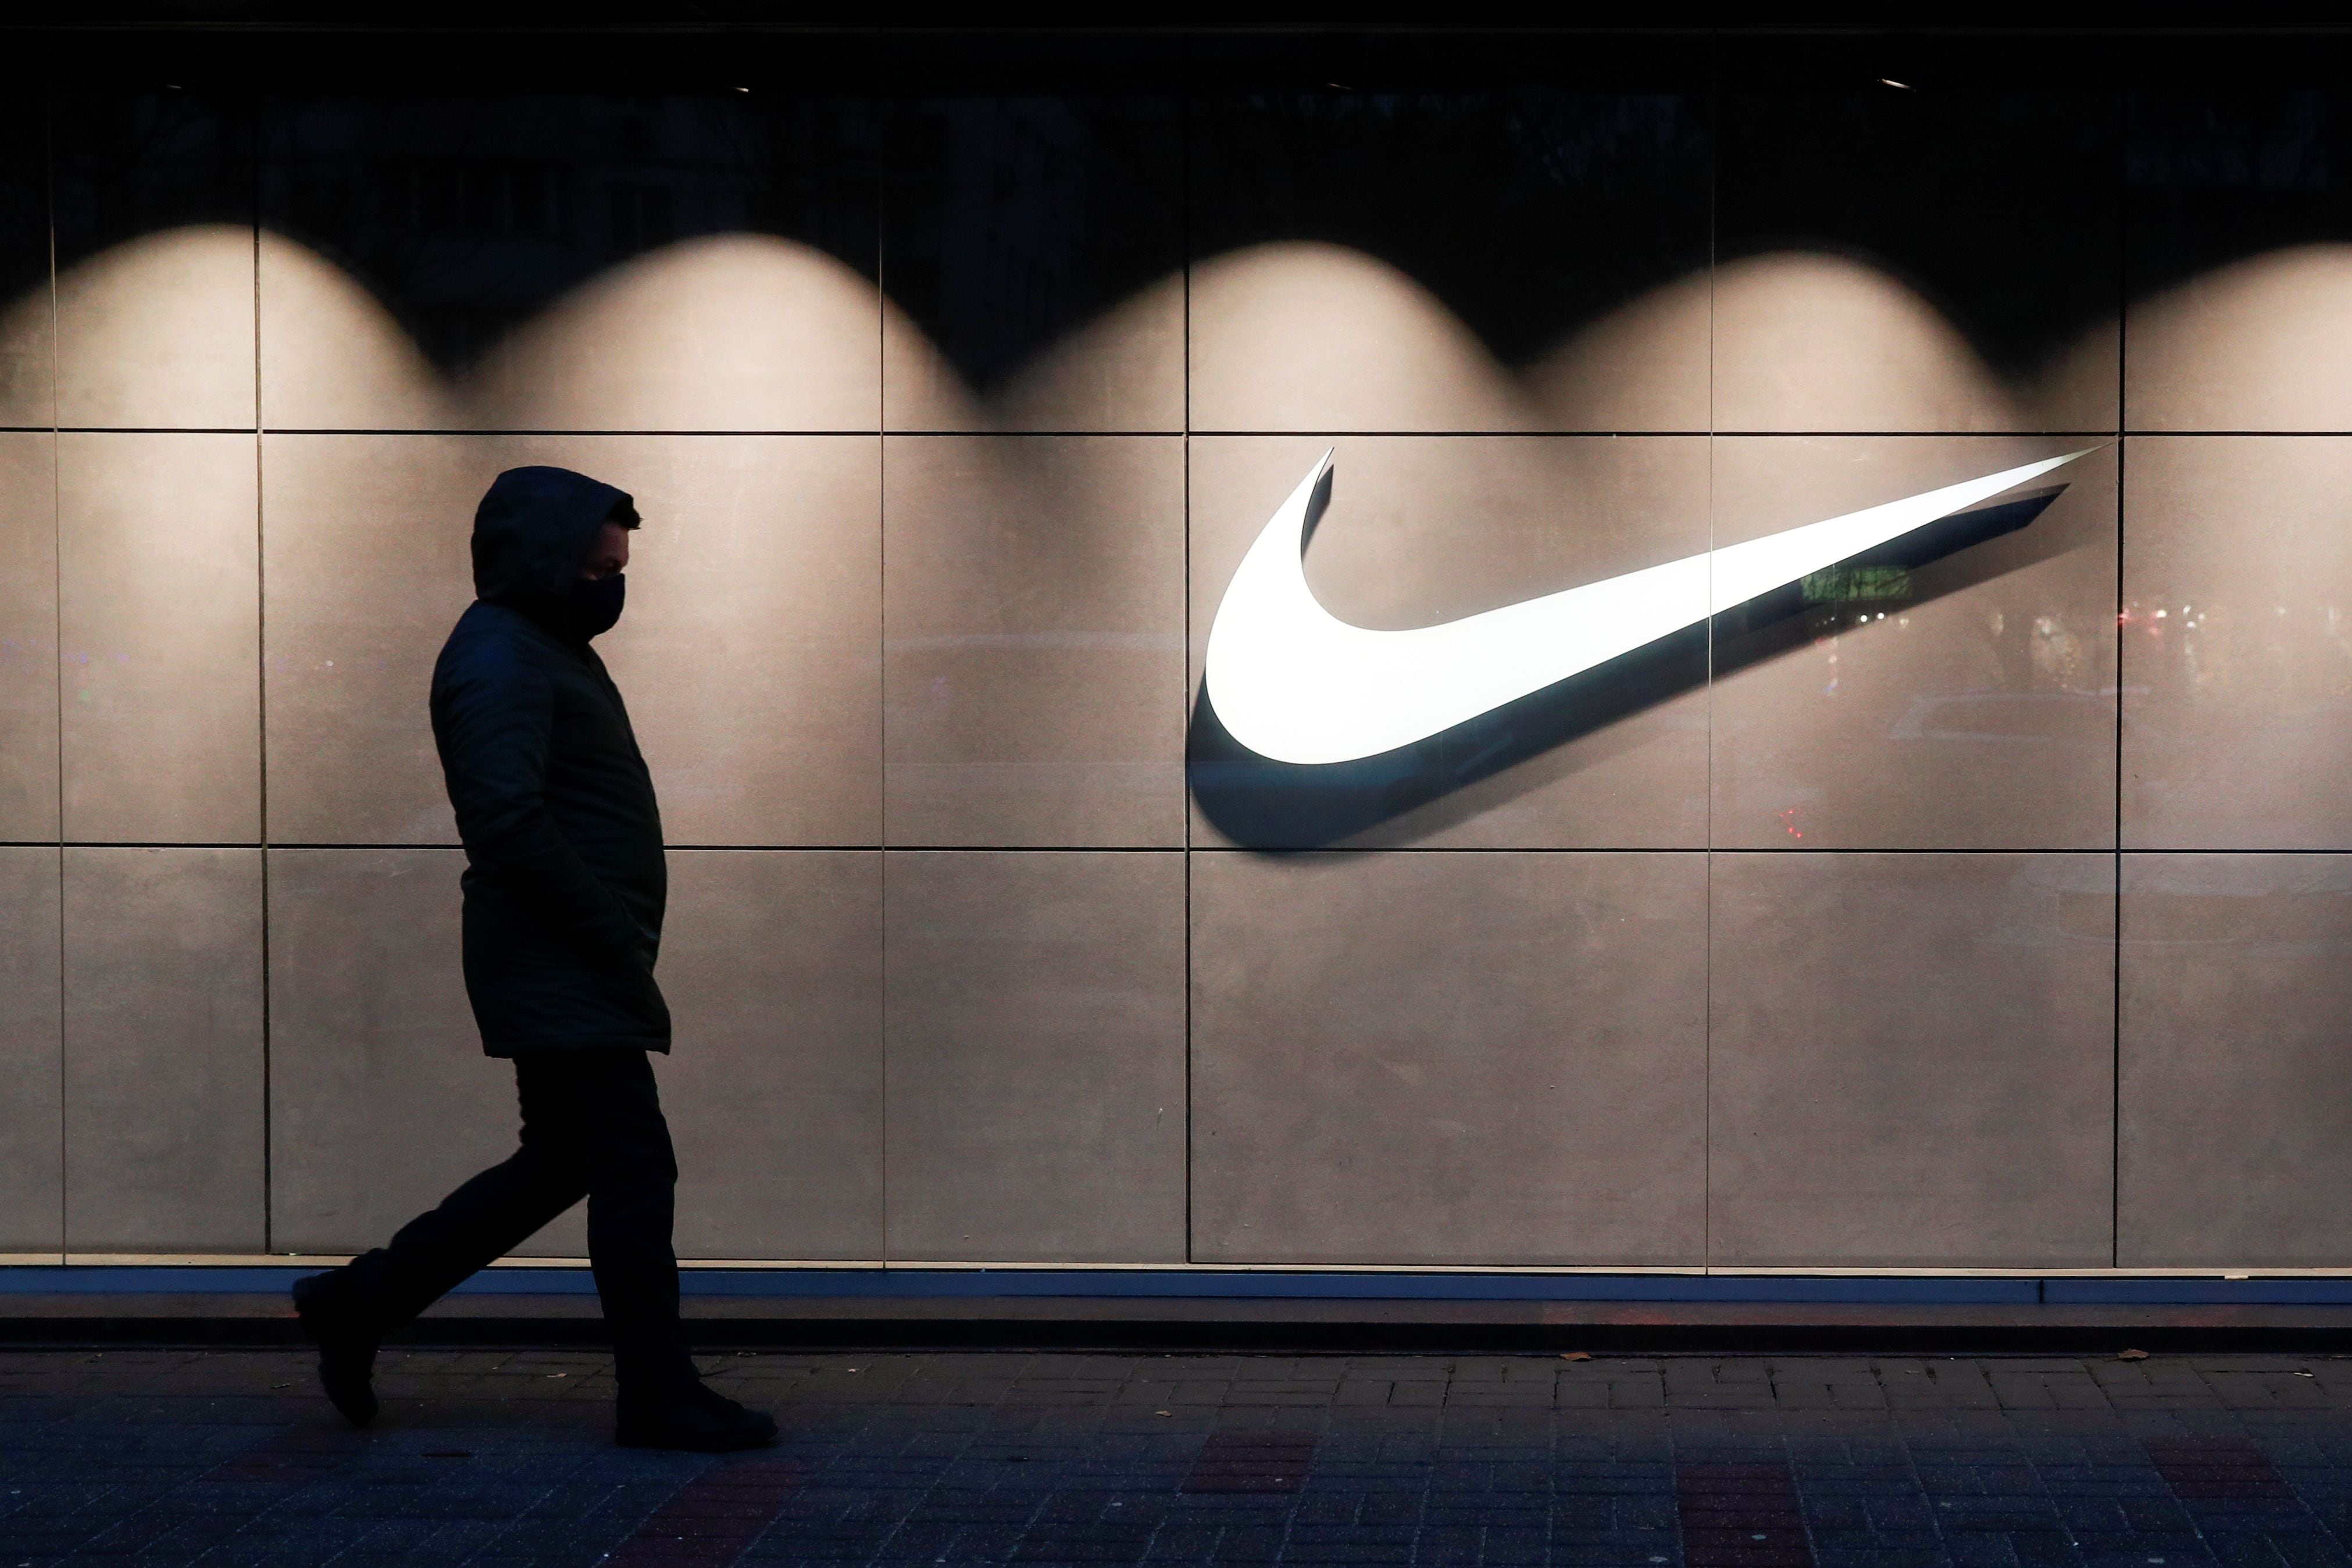 Escala conflicto entre Nike y la ANFP: Firma acusa de “actuar abusivo” y “mala fe” entidad que rige fútbol chileno - La